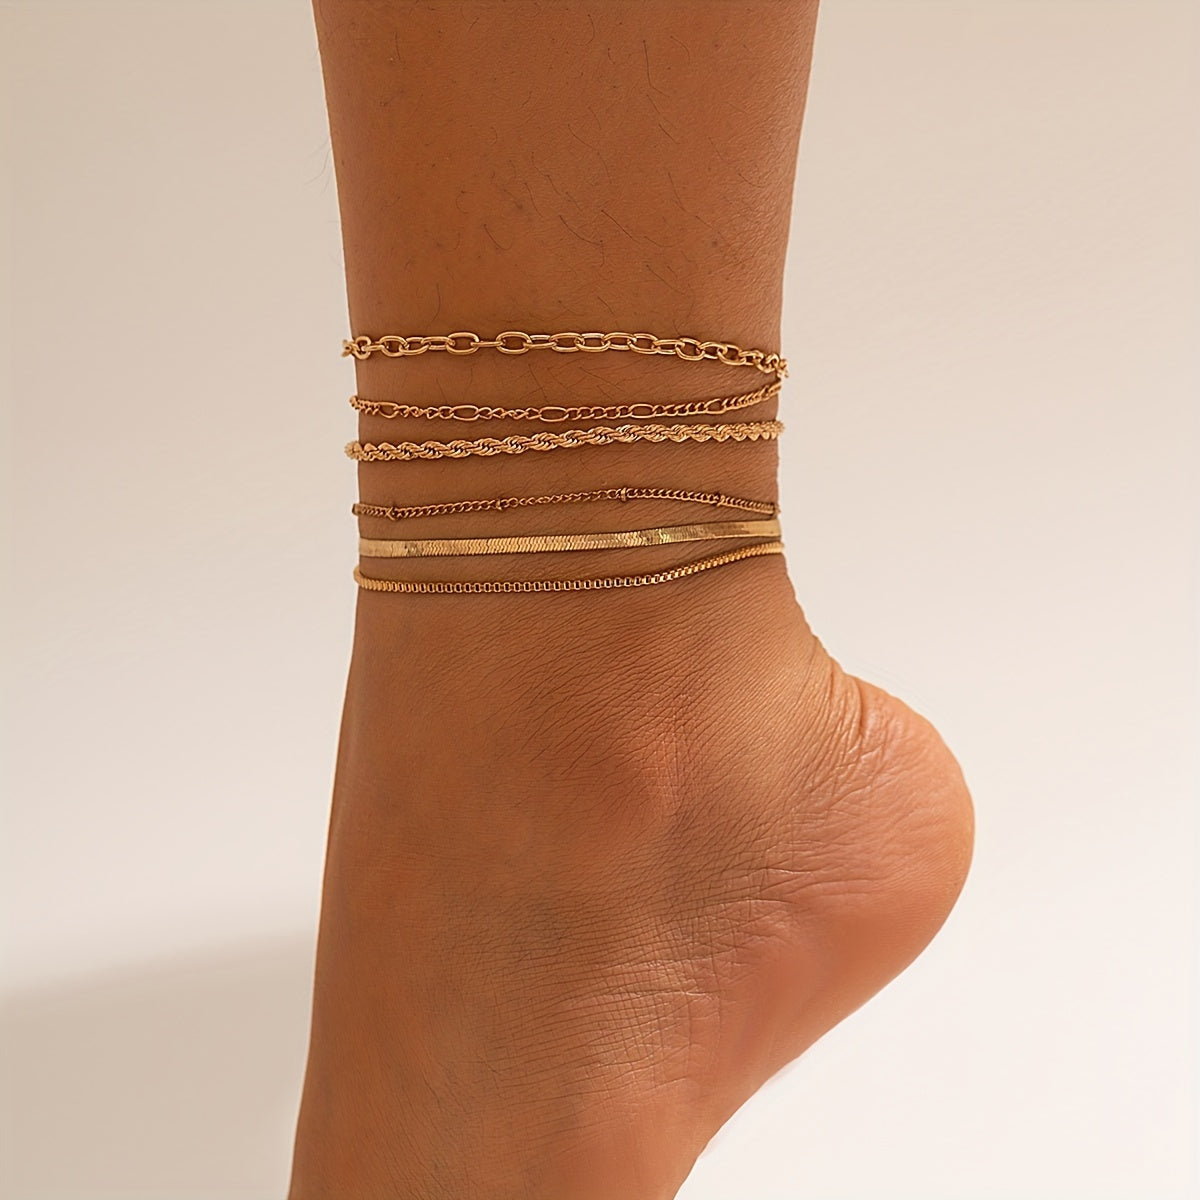 6pcs Vintage Stackable Anklet Set Simple Style Ankle Bracelet For Women Girls